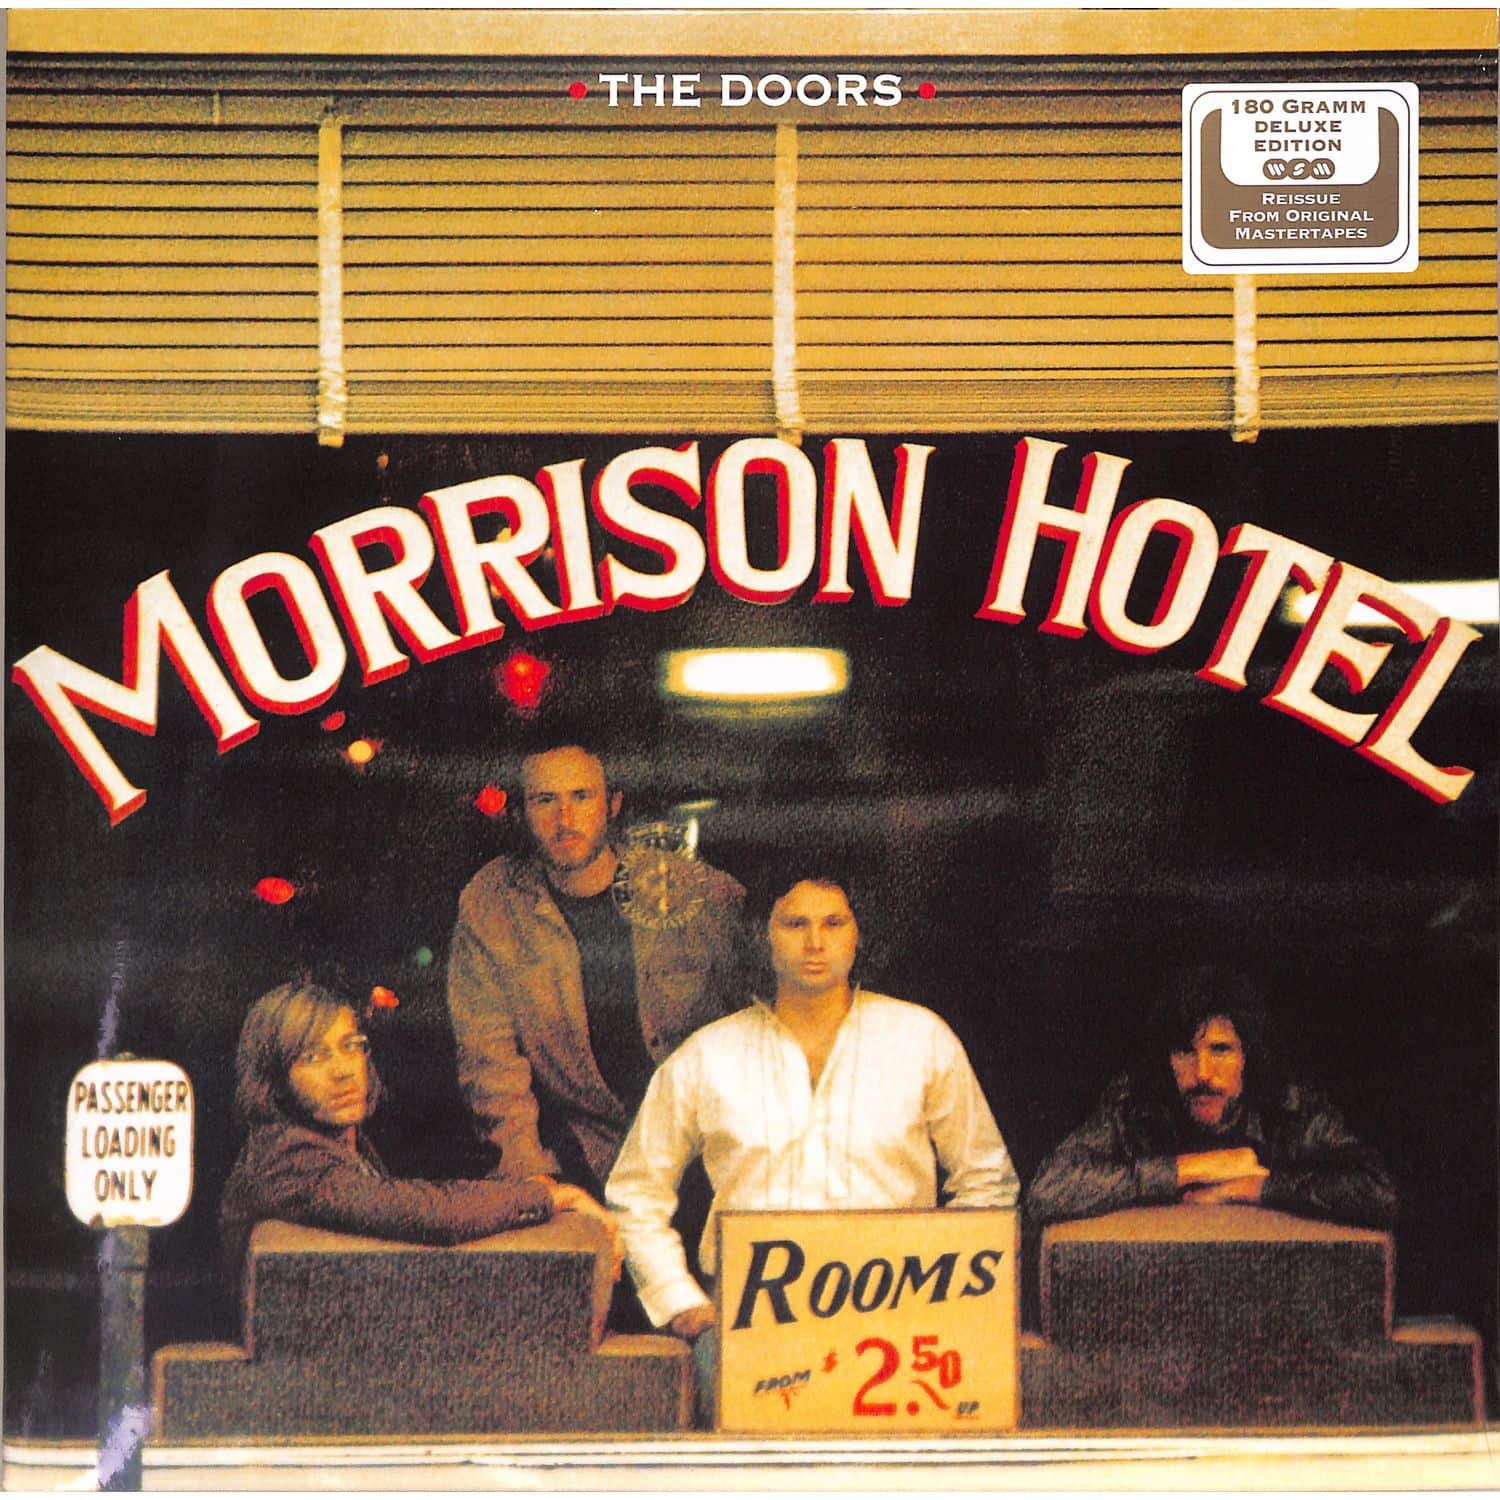 The Doors - MORRISON HOTEL 